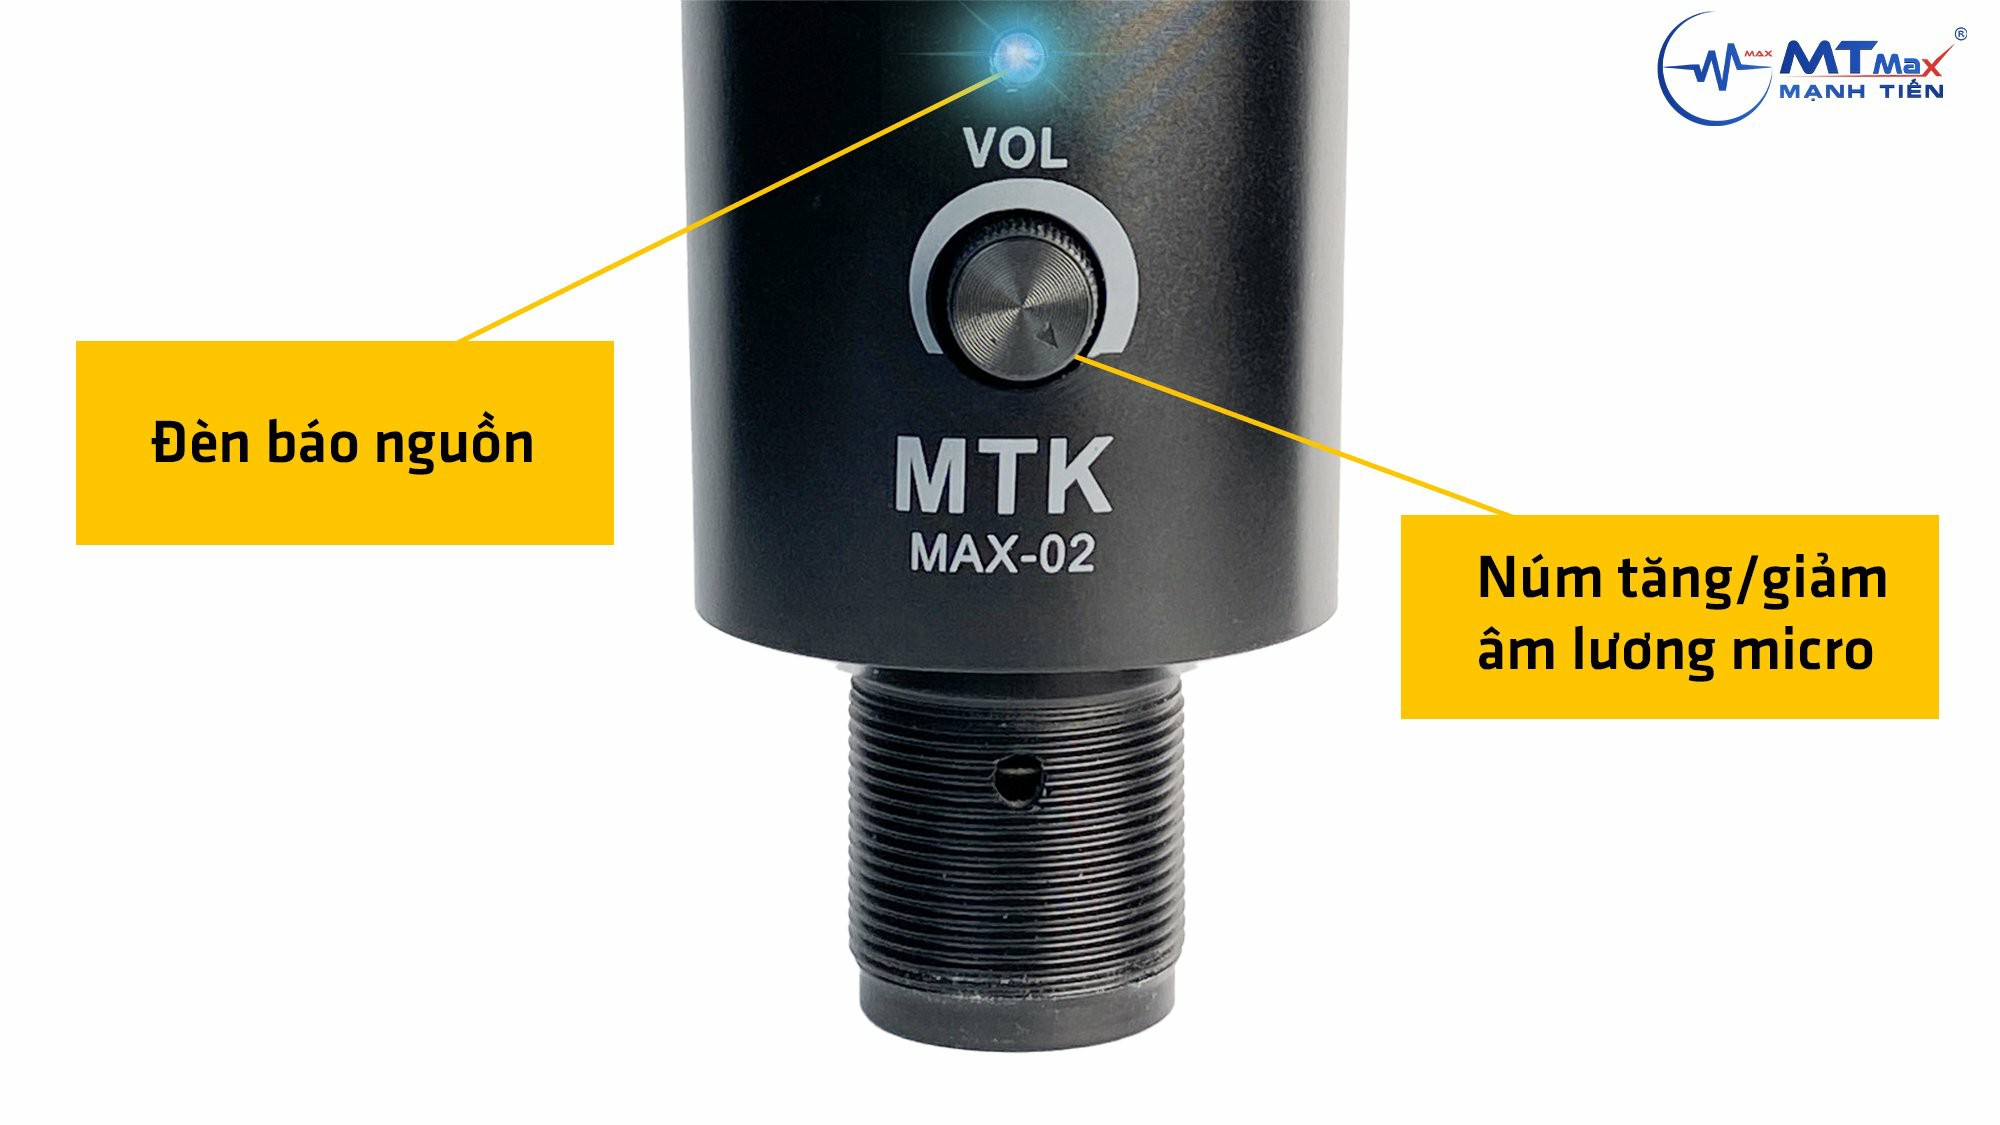 Micro thu âm MTK Max-02 USB - Kết nối trực tiếp qua cổng USB không cần sound card - Sử dụng cho laptop, PC, smartphone - Hỗ trợ livestream, trò chuyện, pk, gaming, hội họp, học trực tuyến ... - Tương tích hầu hết các phần mềm - Hàng nhập khẩu